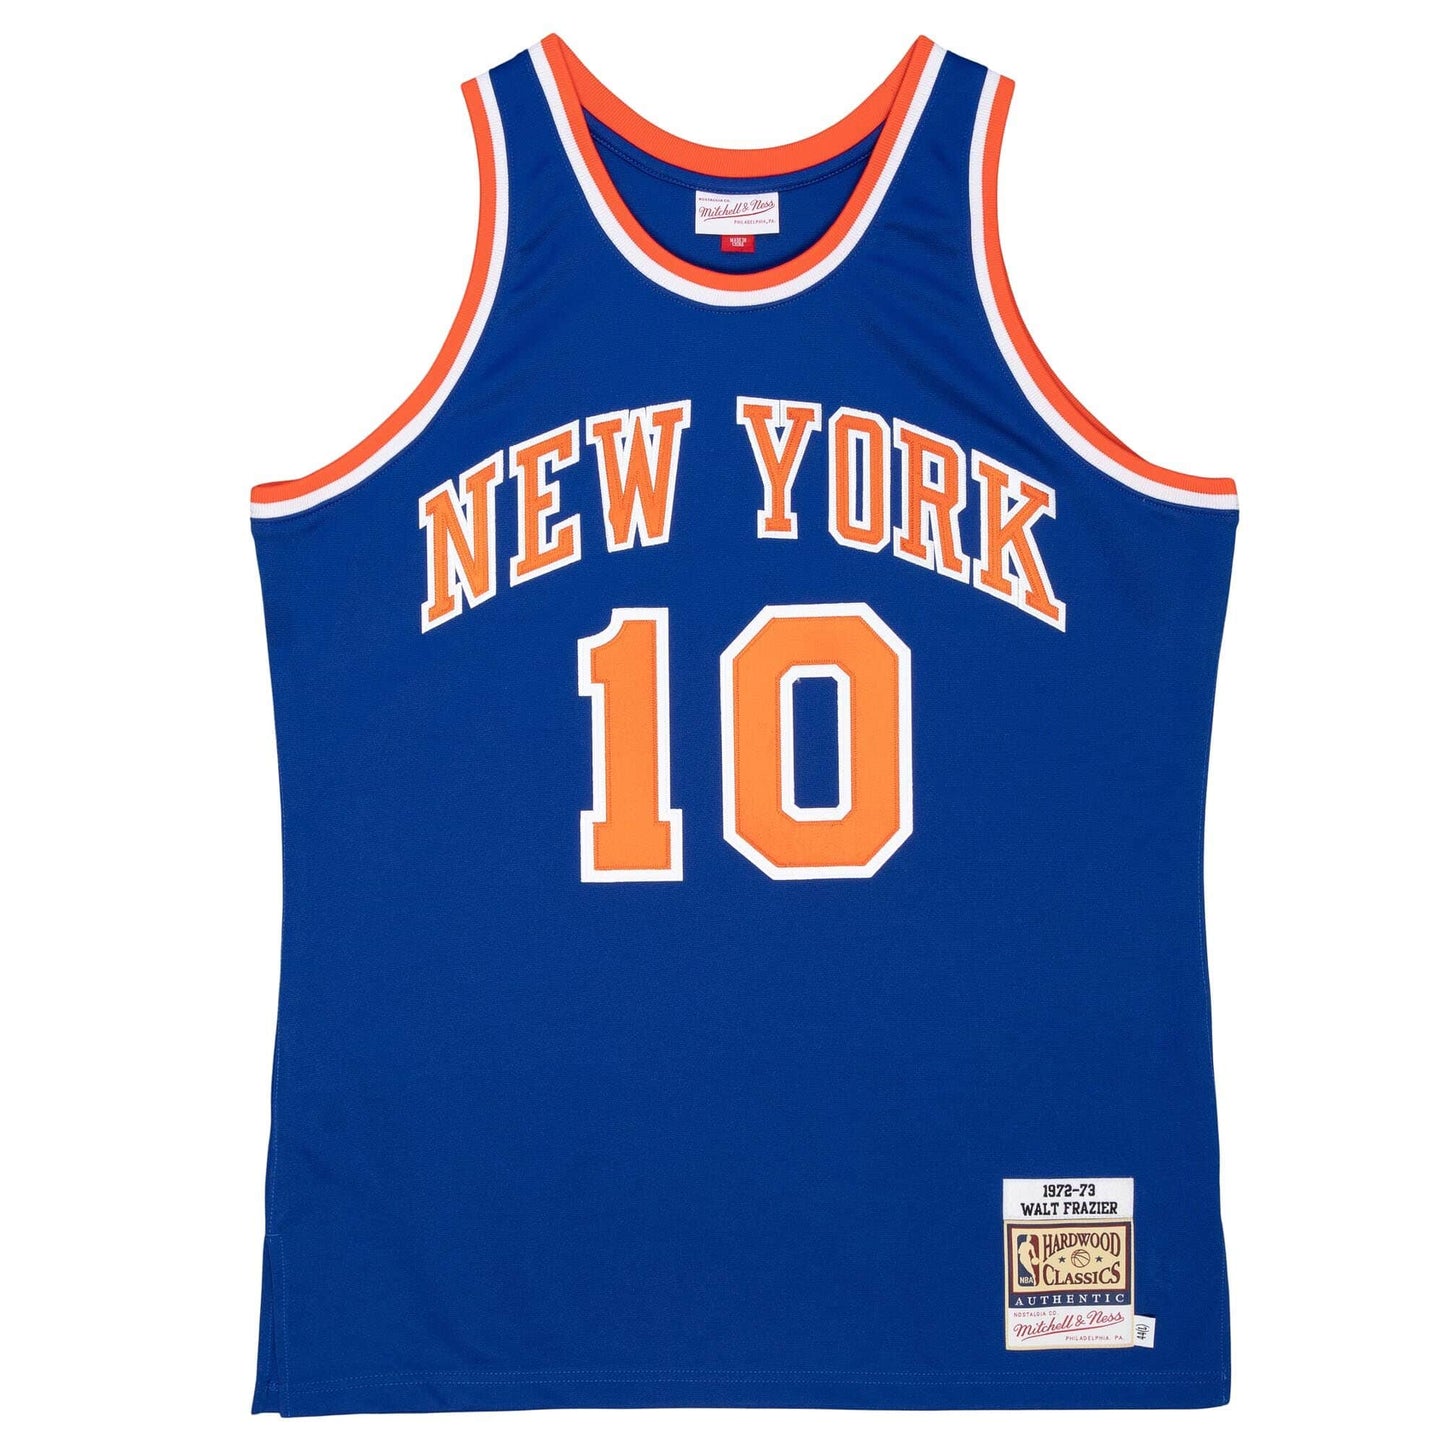 Authentic Walt Frazier New York Knicks 1972-73 Jersey